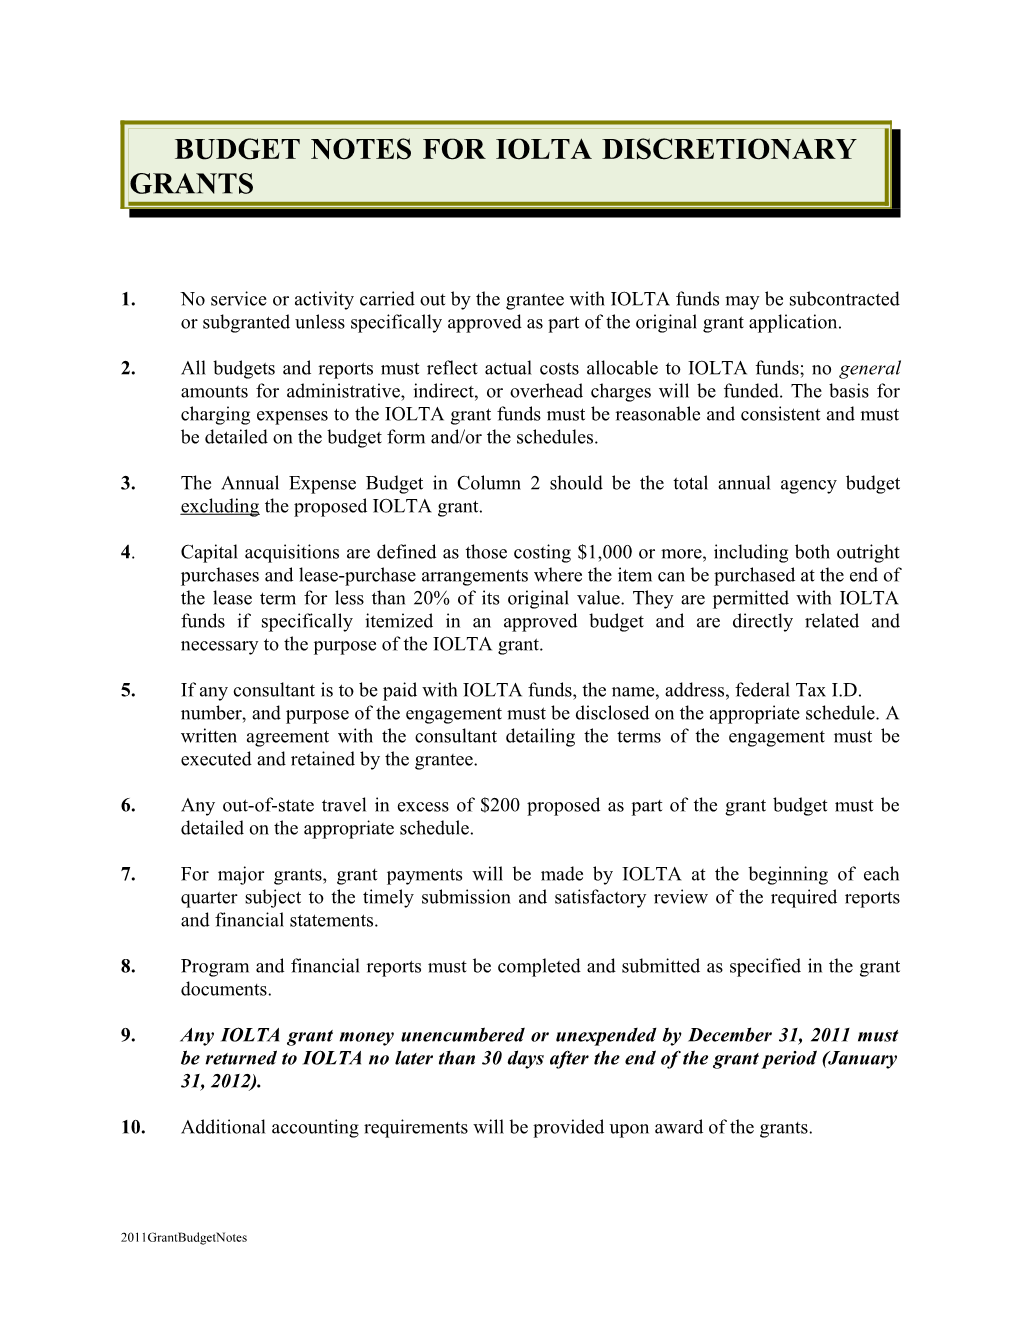 Budget Notes for Iolta Discretionary Grants